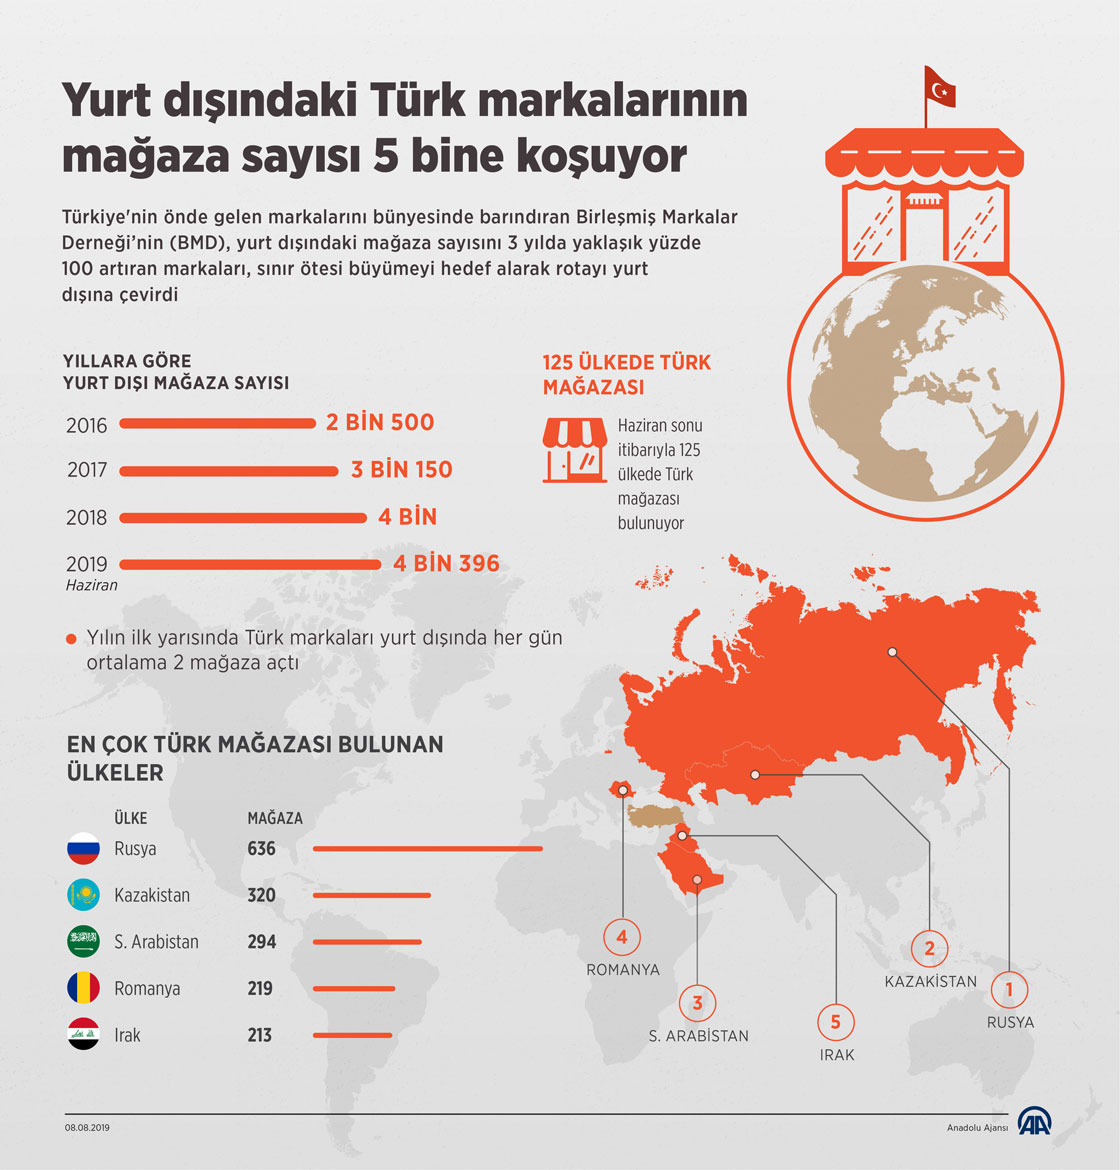 Yurt dışındaki Türk markalarının mağaza sayısı 5 bine koşuyor